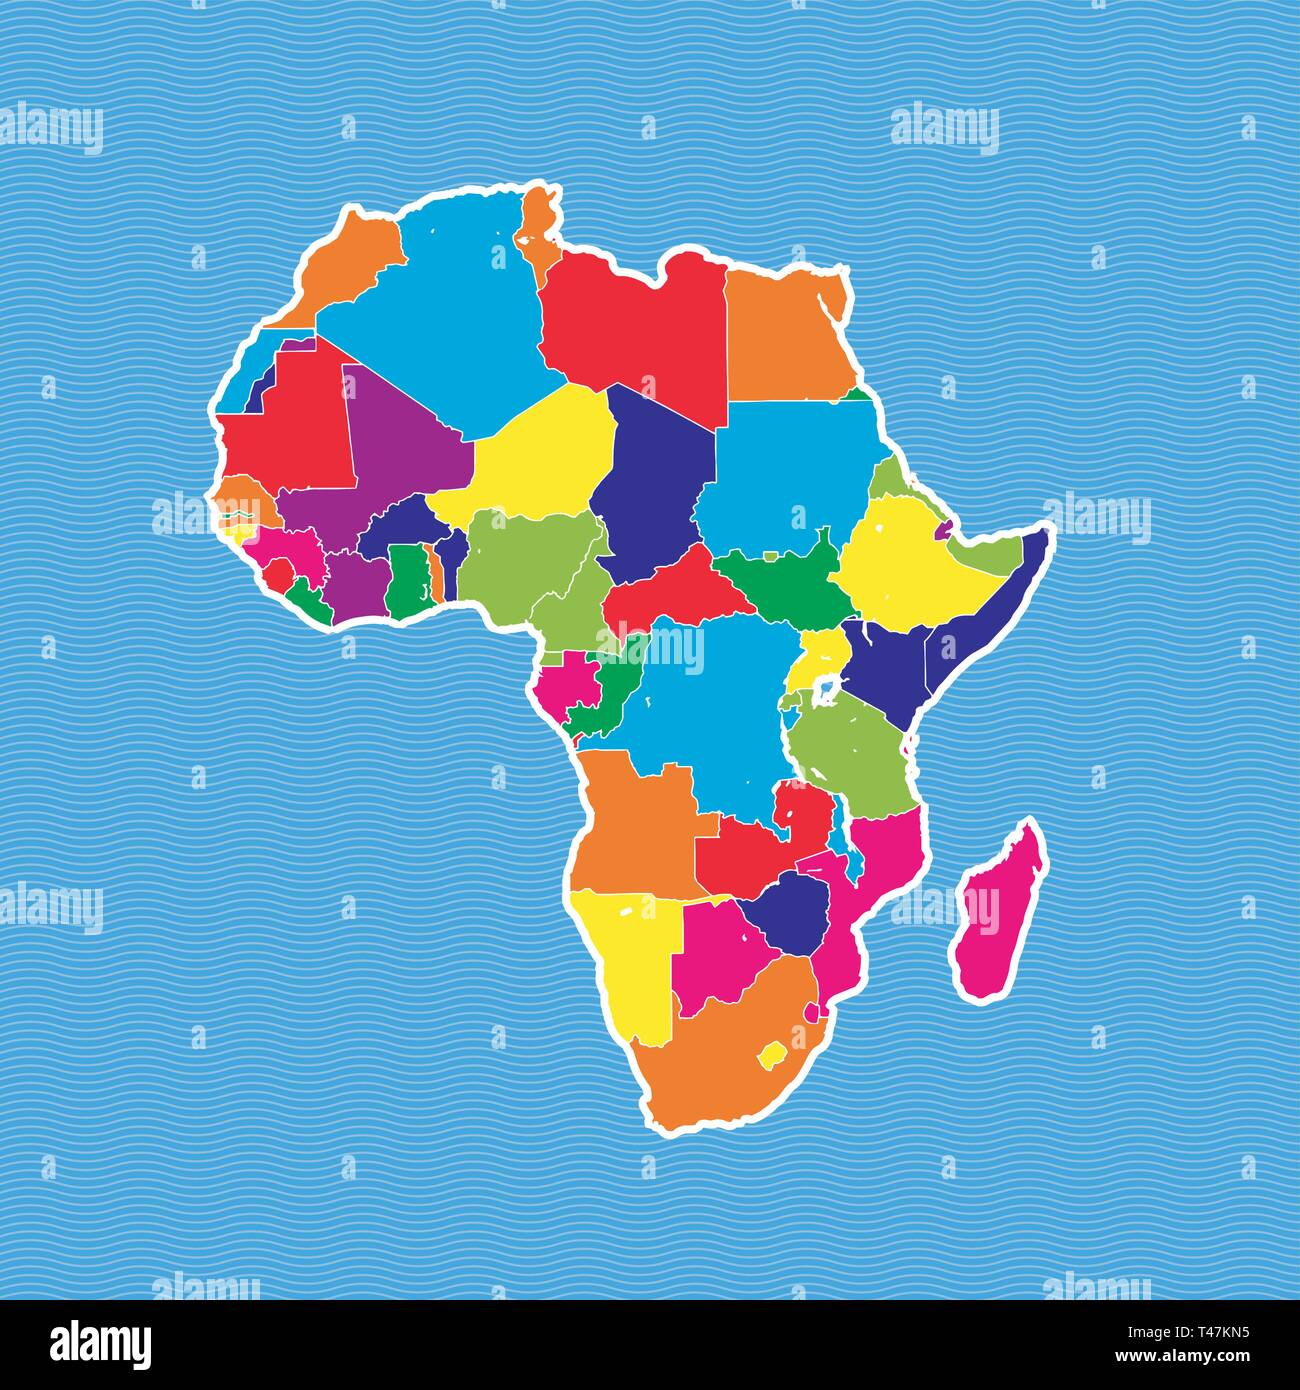 Mapa Político De África Mapa De Colores Separados En Onda Azul De Fondo De Agua Imagen Vector 3574